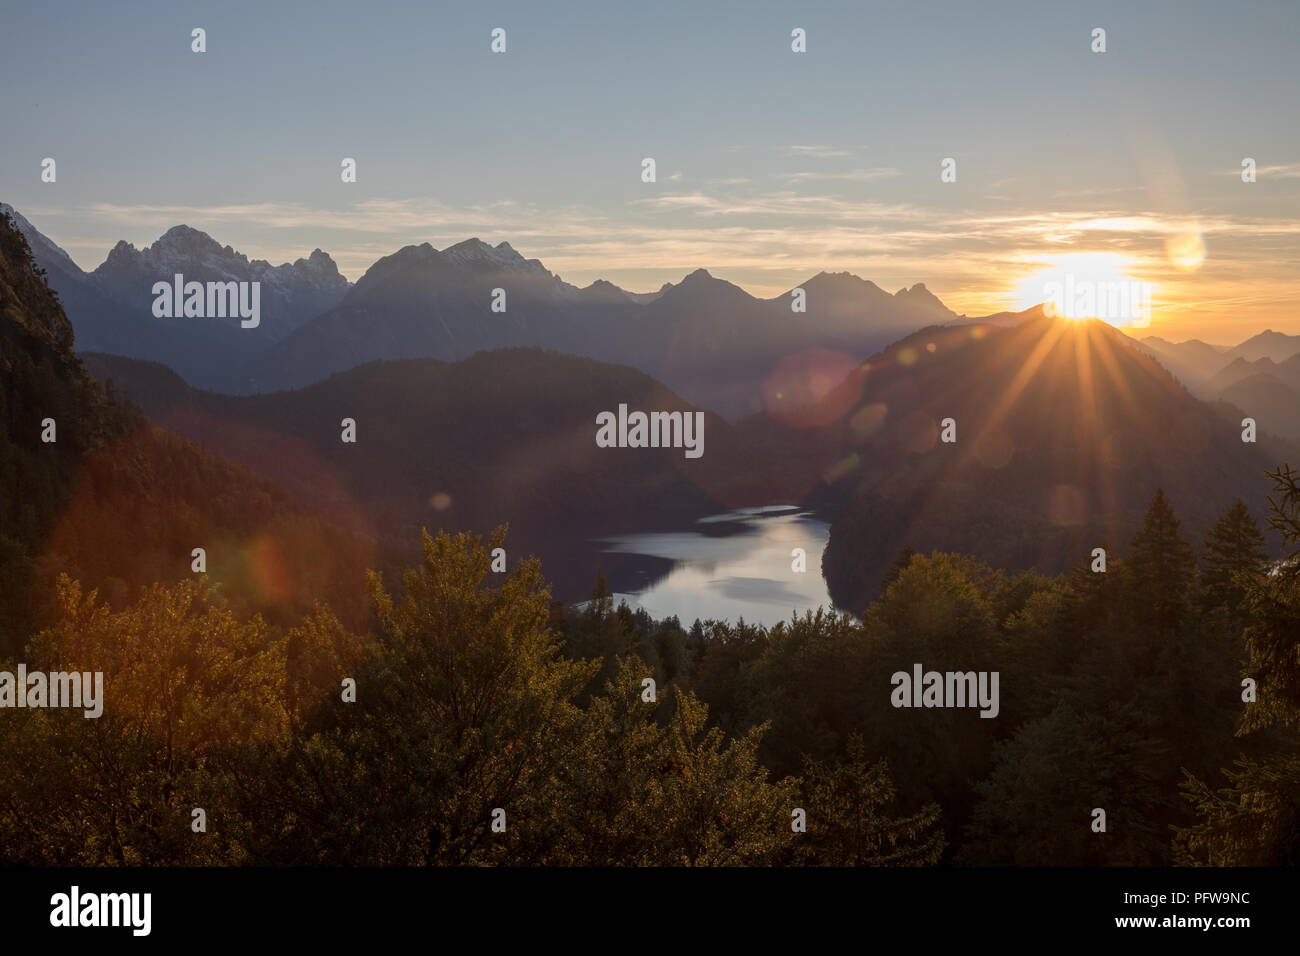 Ein pic von den Alpen mit Berge Flüsse Bäume als Landschaft Stockfoto